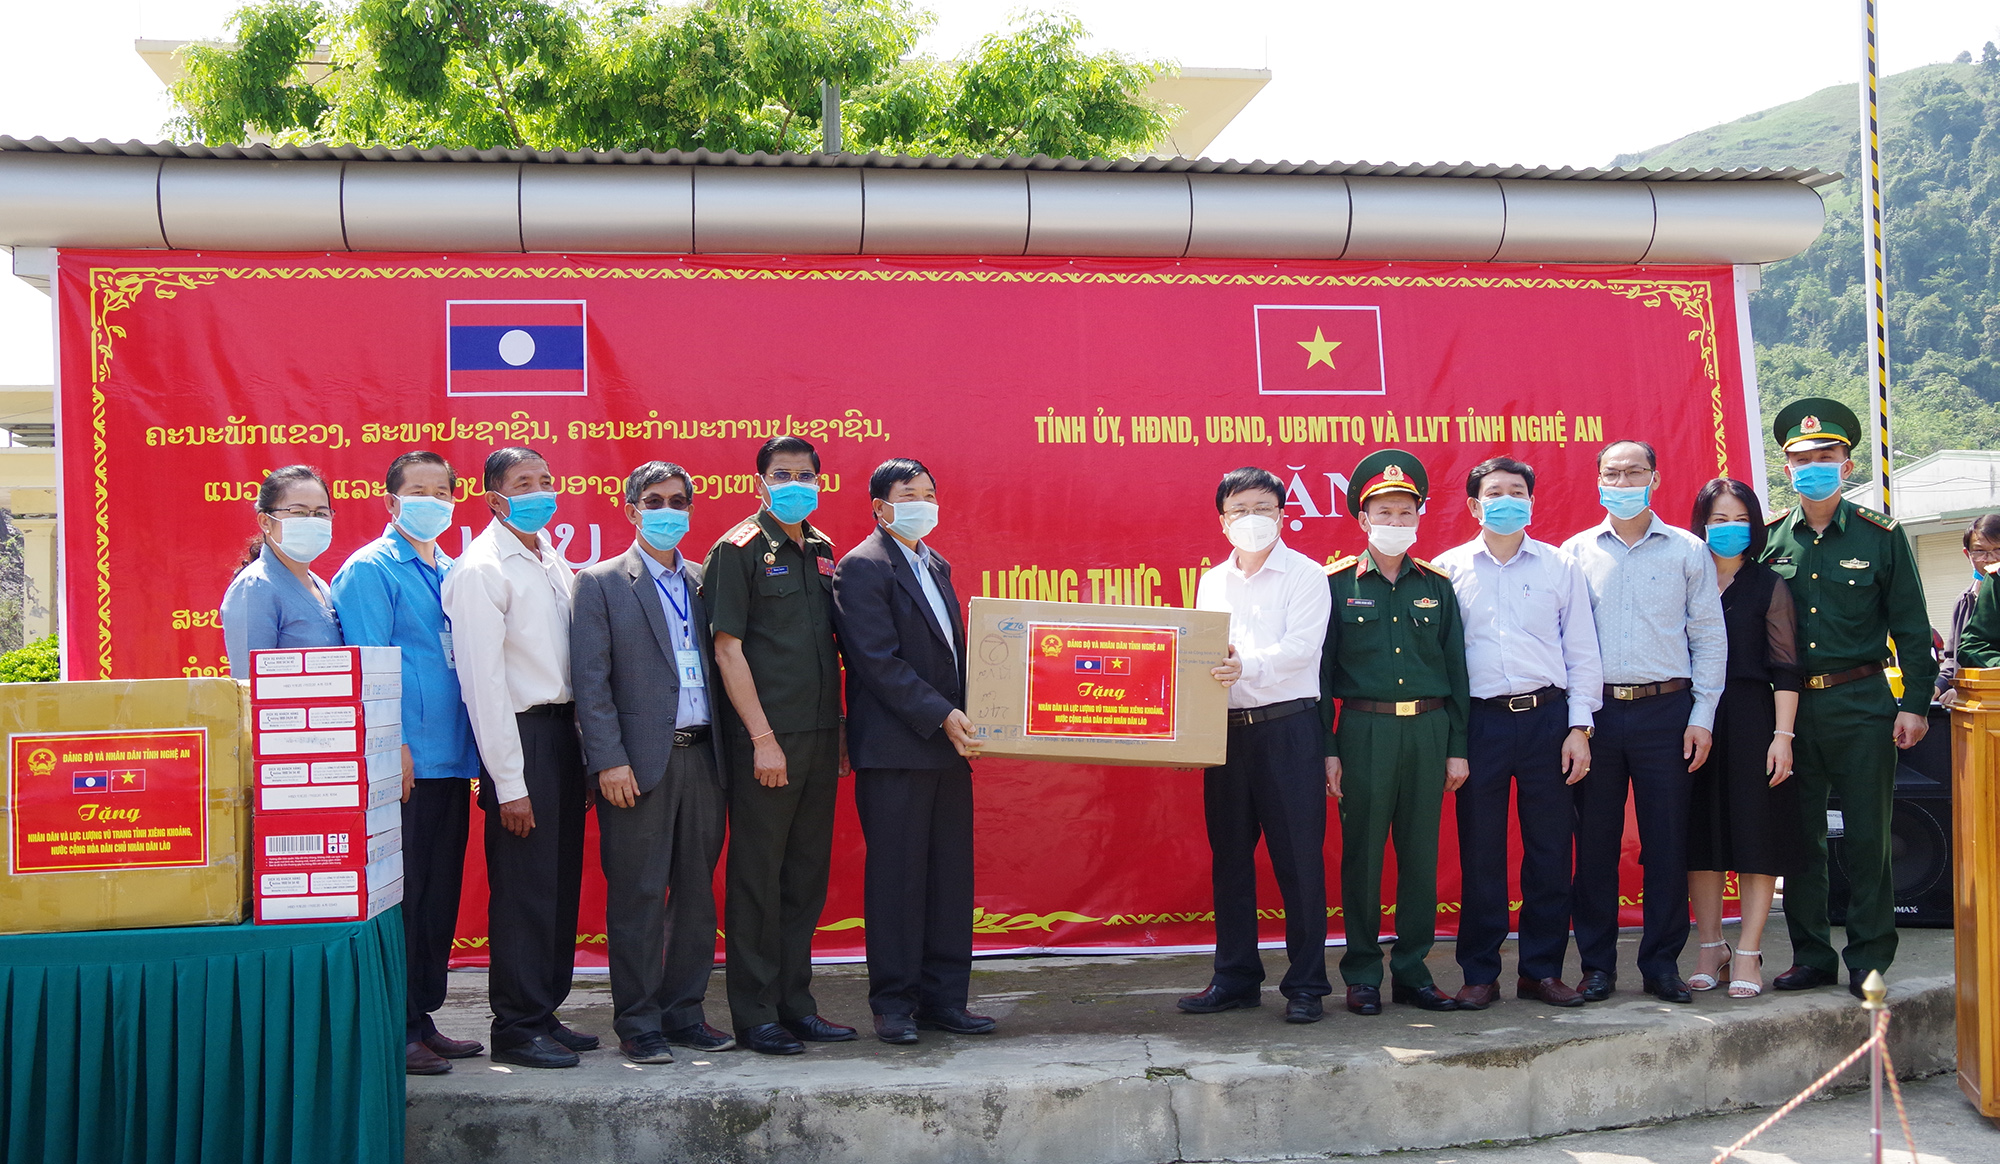 Tỉnh Nghệ An trao tặng vật tư và thiết bị hỗ trợ phòng chống Covid-19 cho tỉnh Xiêng Khoảng (Lào) 